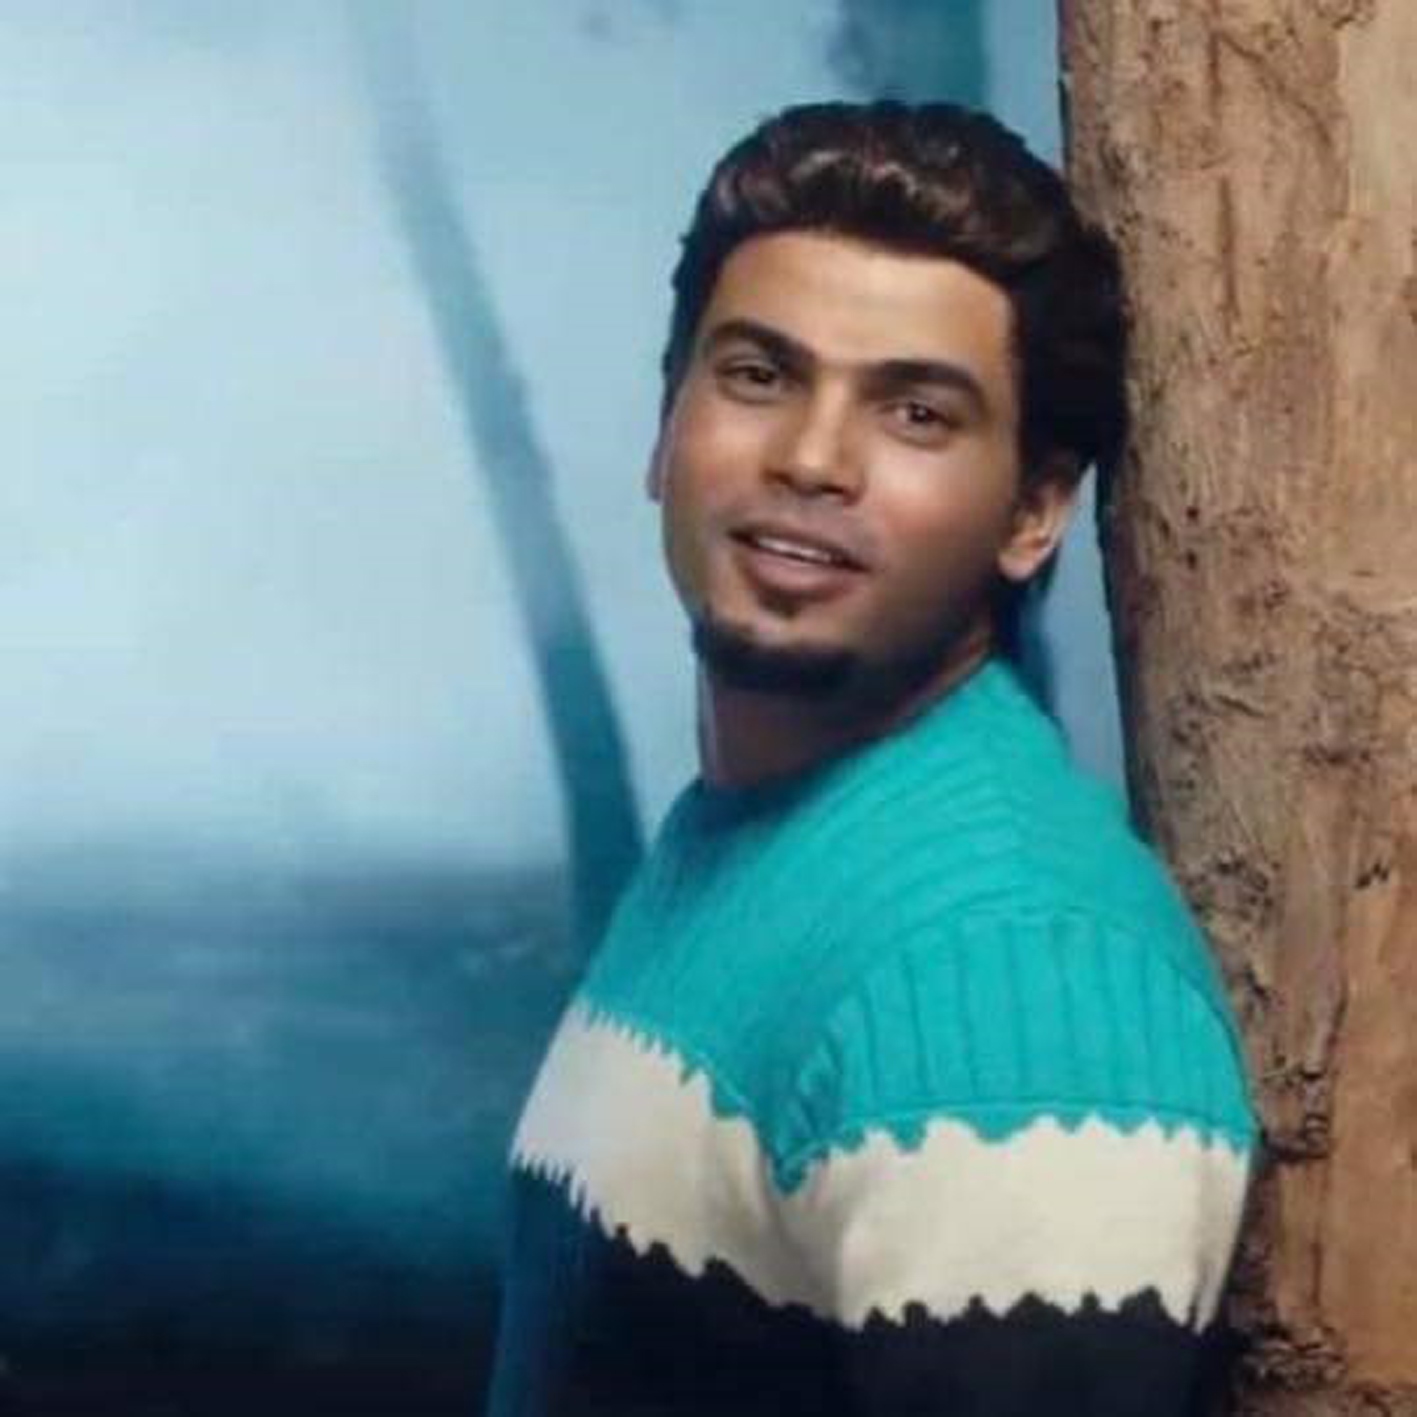 حسام مصطفى كما ظهر في الإعلان بـلوك عمرو دياب في أغنية تملي معاك